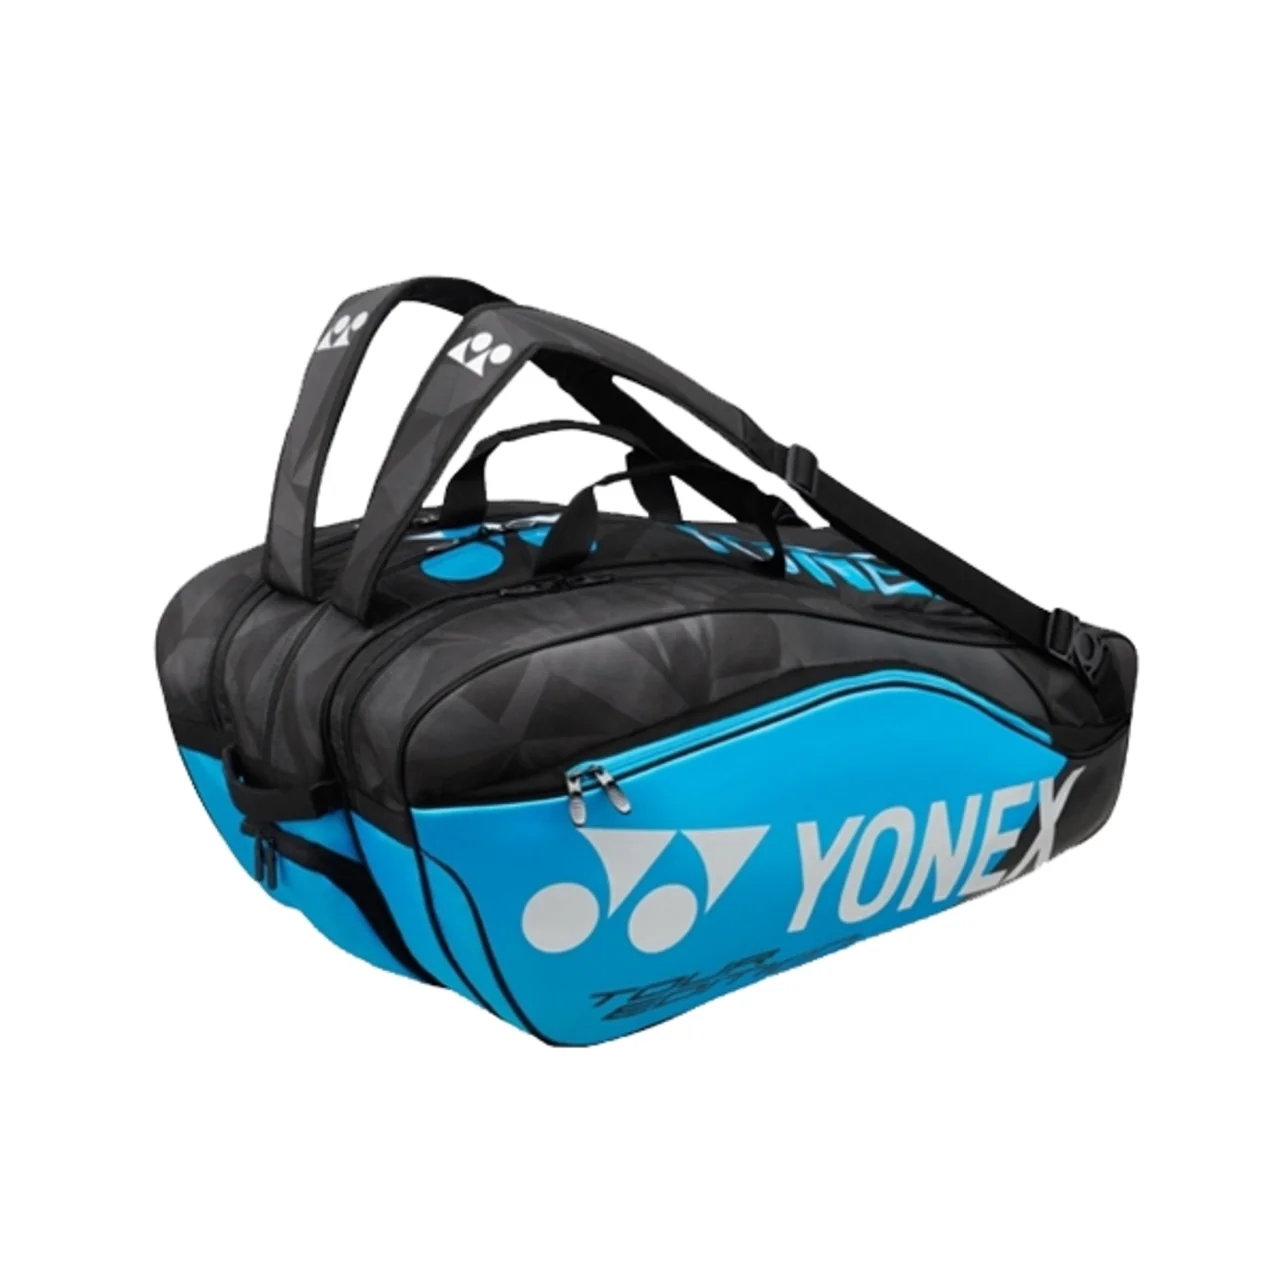 Yonex Pro Bag x9 Infinity Blue 2019